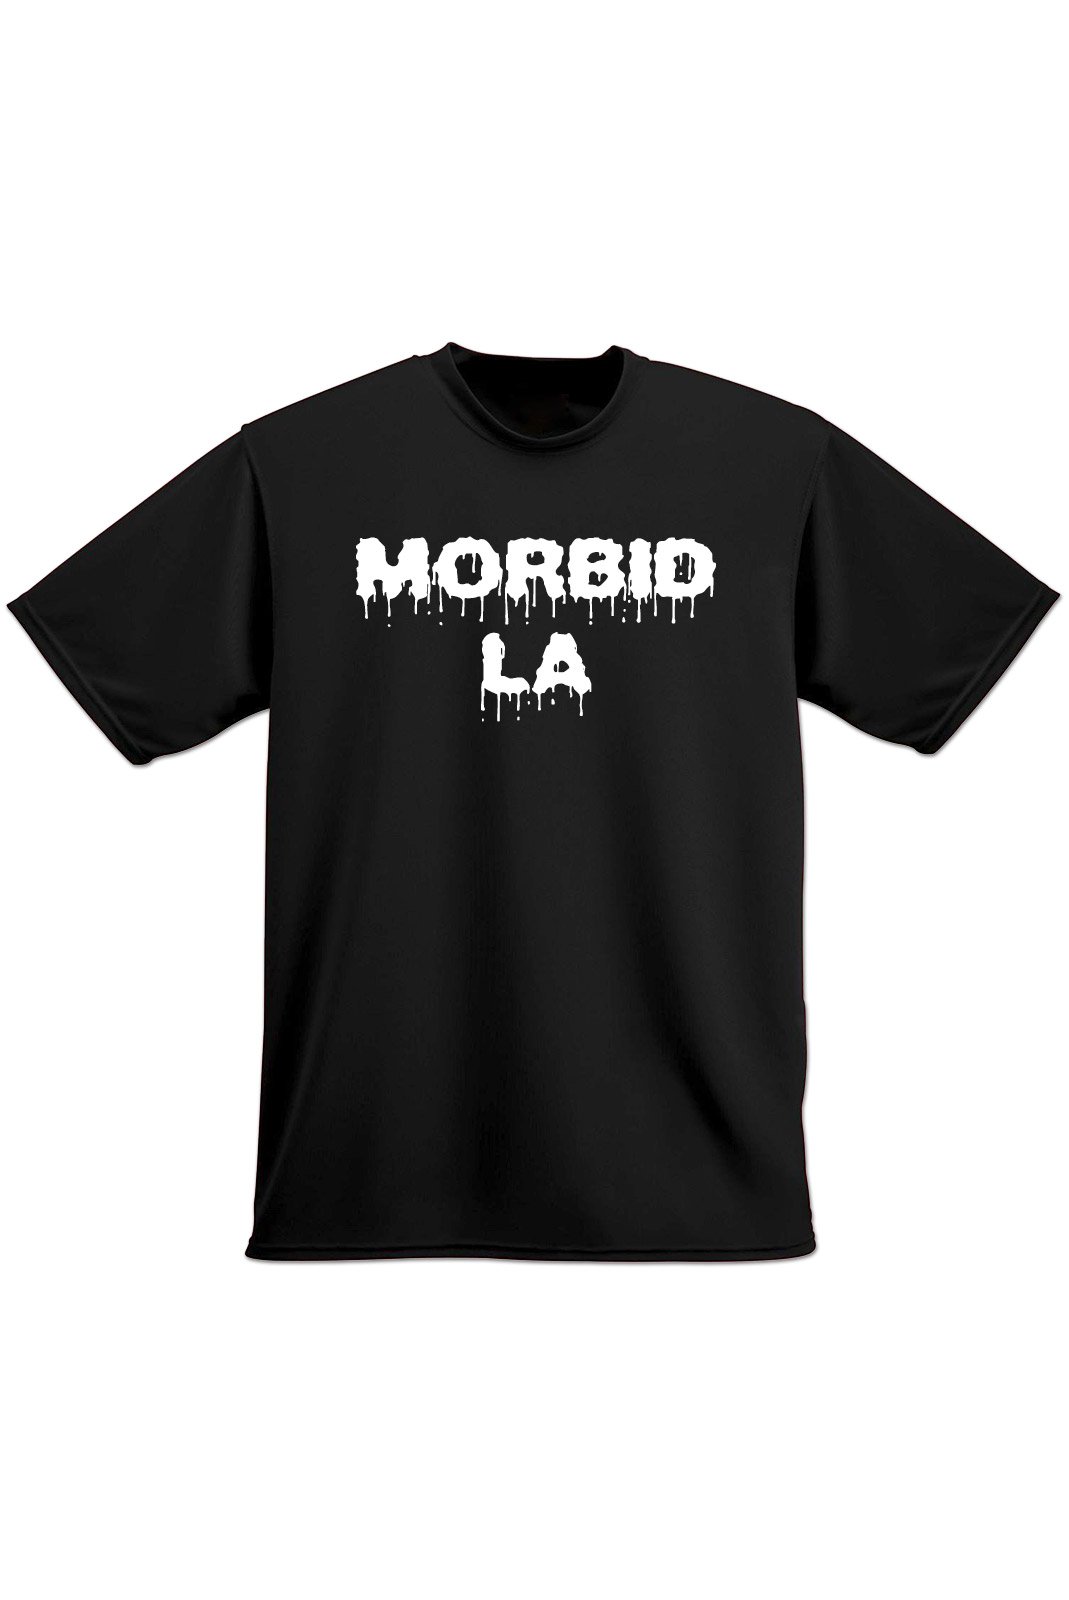 MORBID LA Streetwear Clothing Skater Style Black TShirt